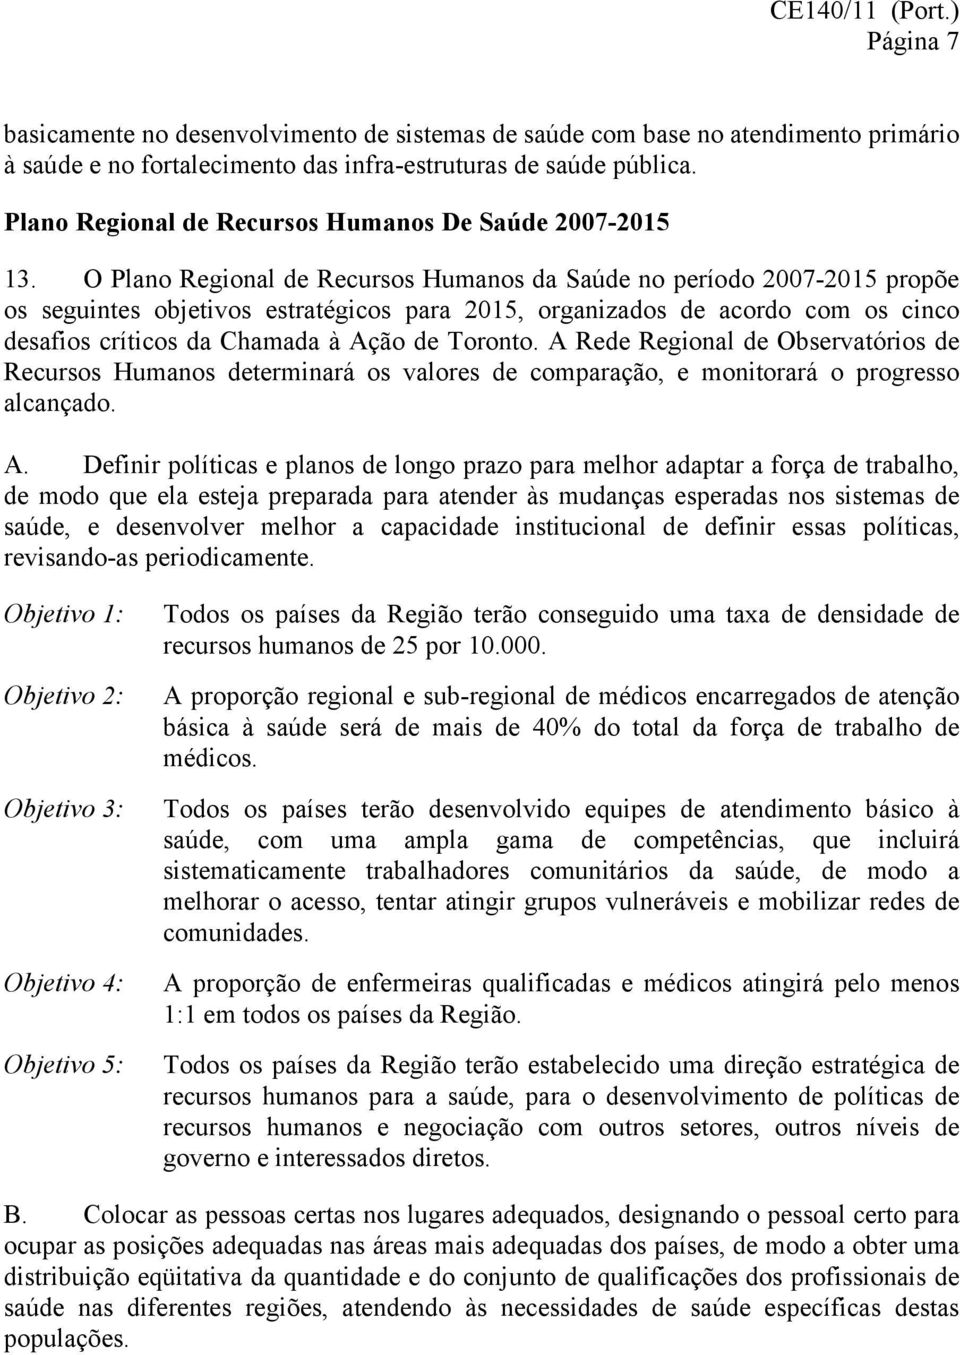 O Plano Regional de Recursos Humanos da Saúde no período 2007-2015 propõe os seguintes objetivos estratégicos para 2015, organizados de acordo com os cinco desafios críticos da Chamada à Ação de